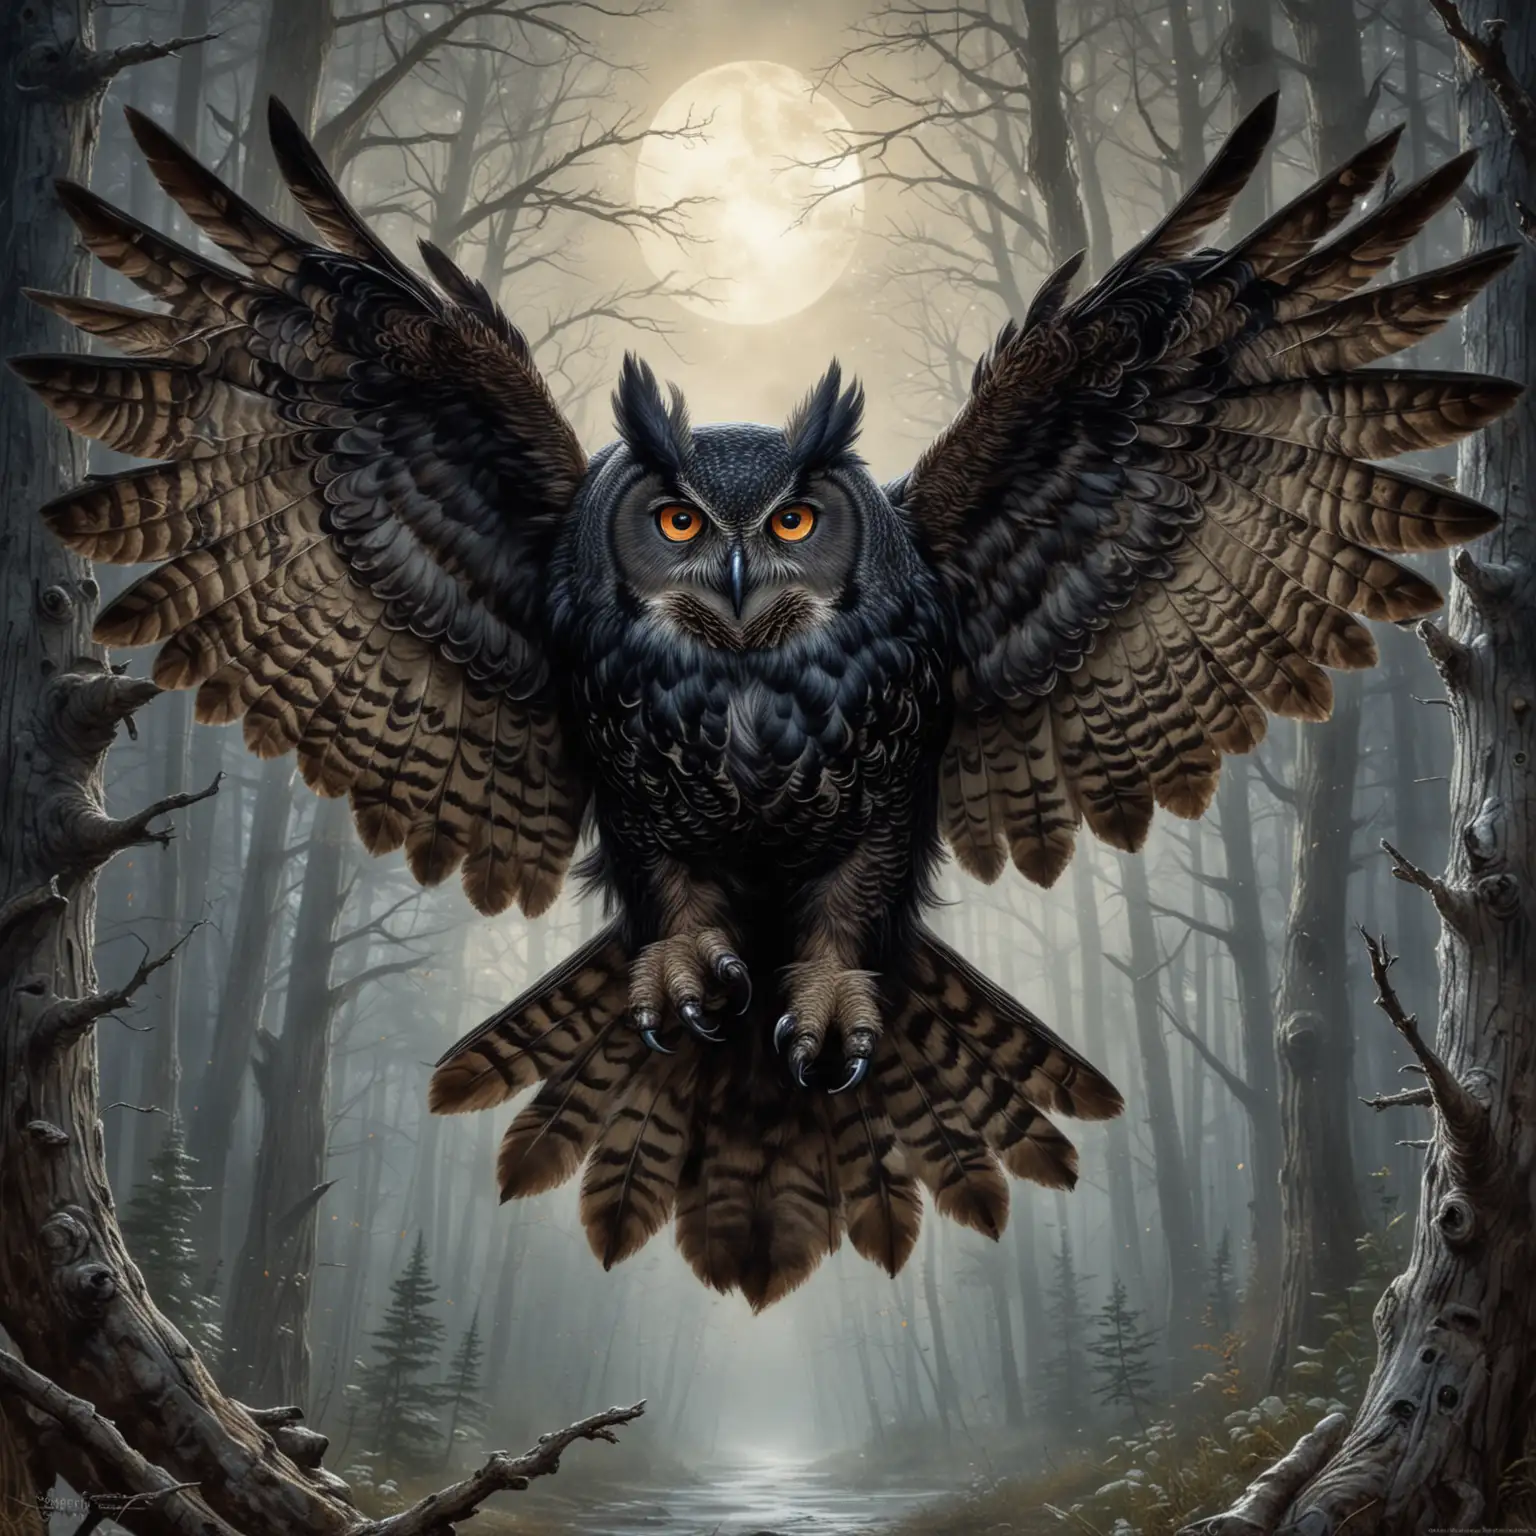 Large black horned owl with piercing eyes, it is fierce, it is mid flight fantasy art